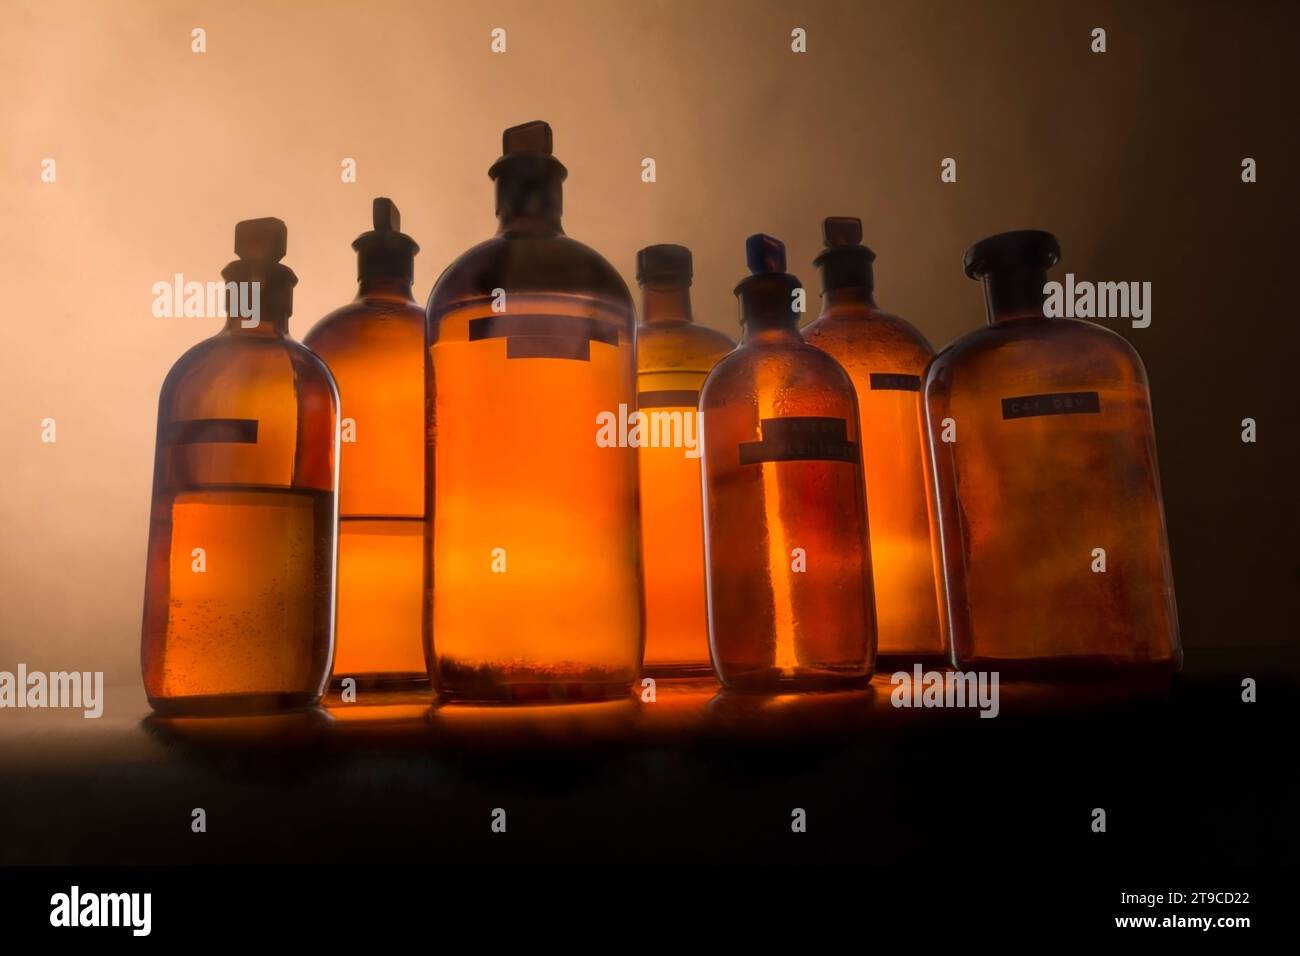 Vita morta dei flaconi in vetro ambrato per prodotti chimici fotografici liquidi Foto Stock